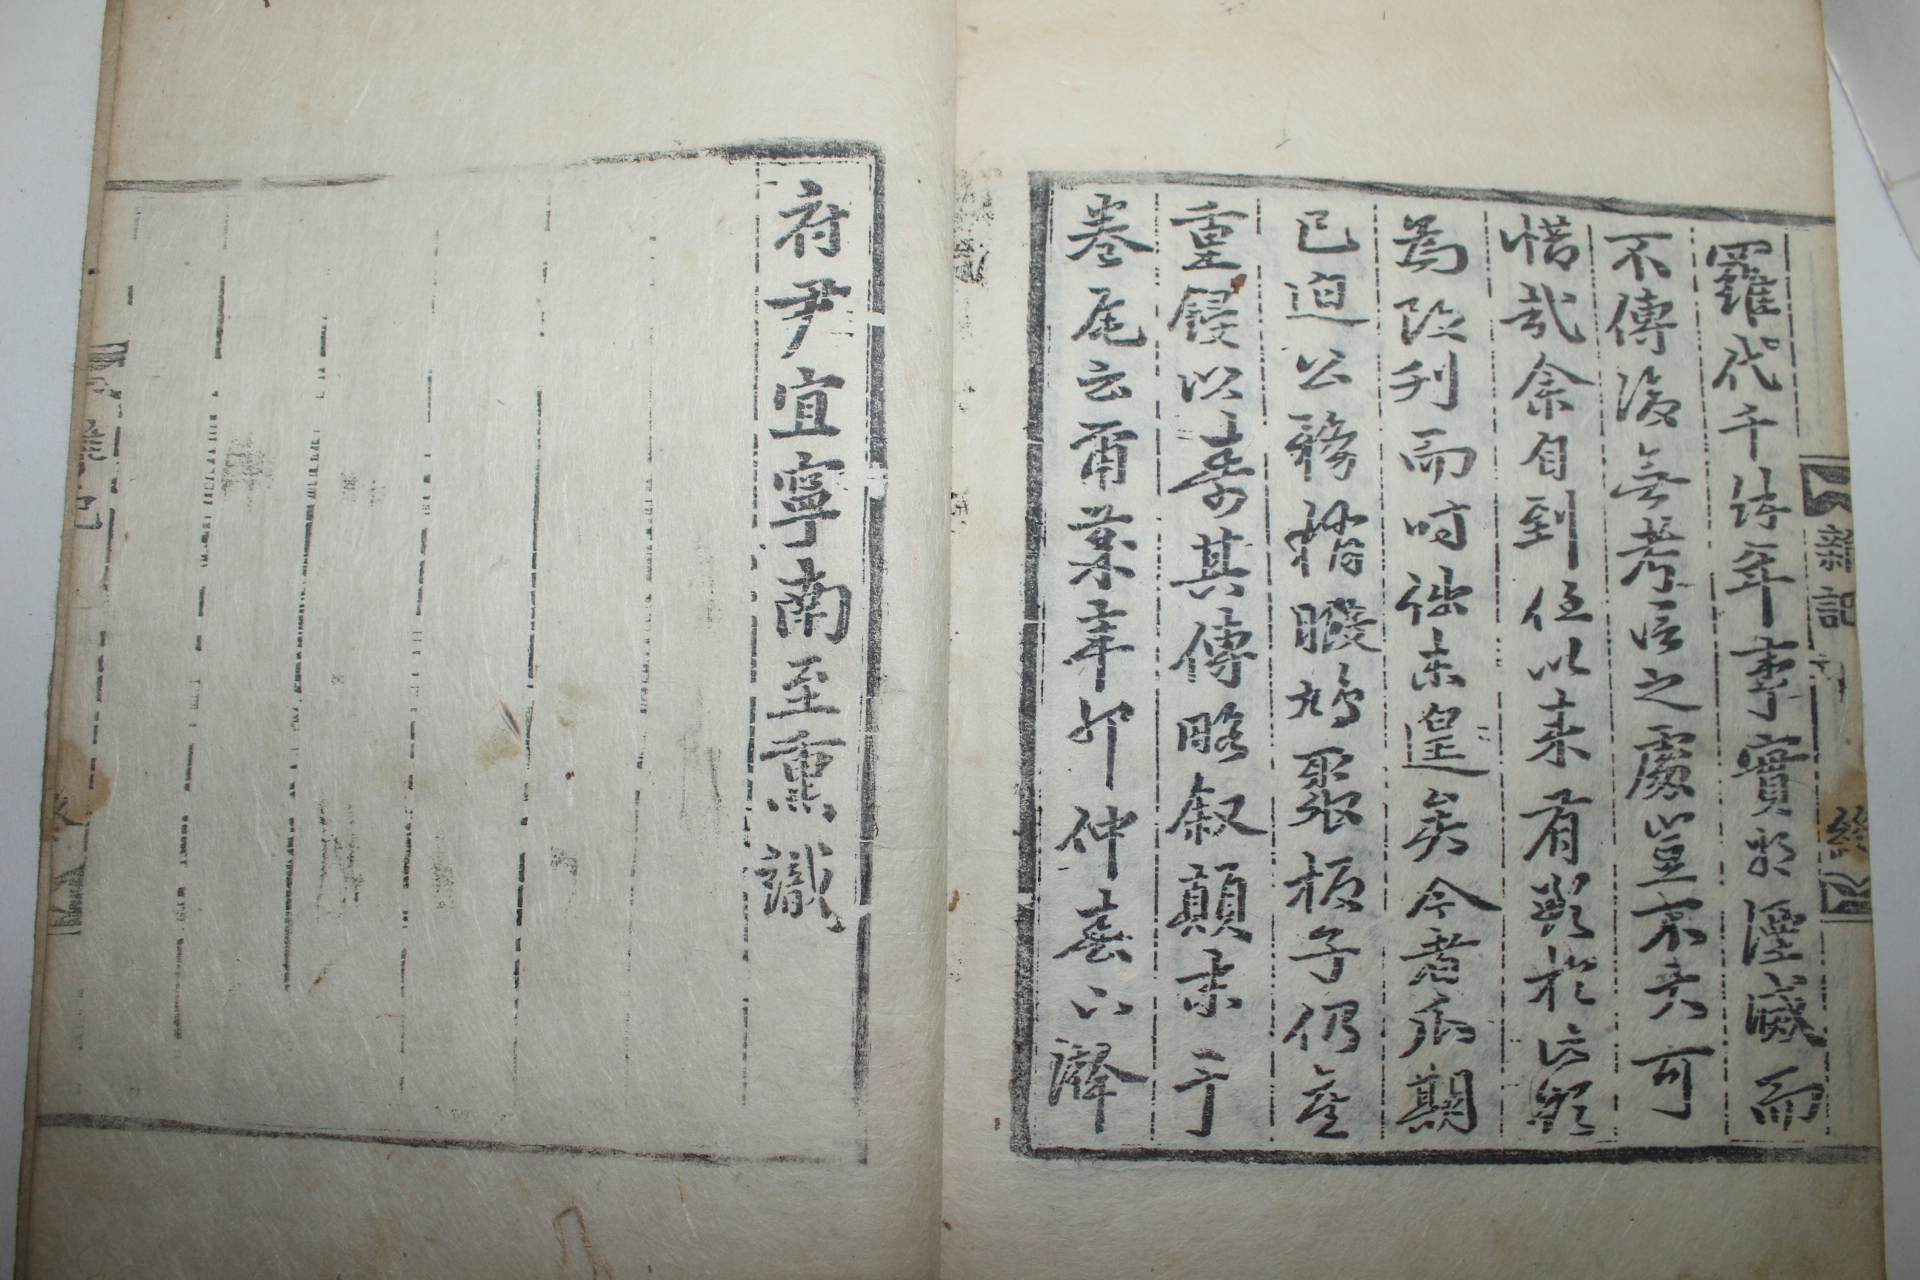 조선시대 목판본 경주지도가 수록된 동경잡기(東京雜記) 3책완질